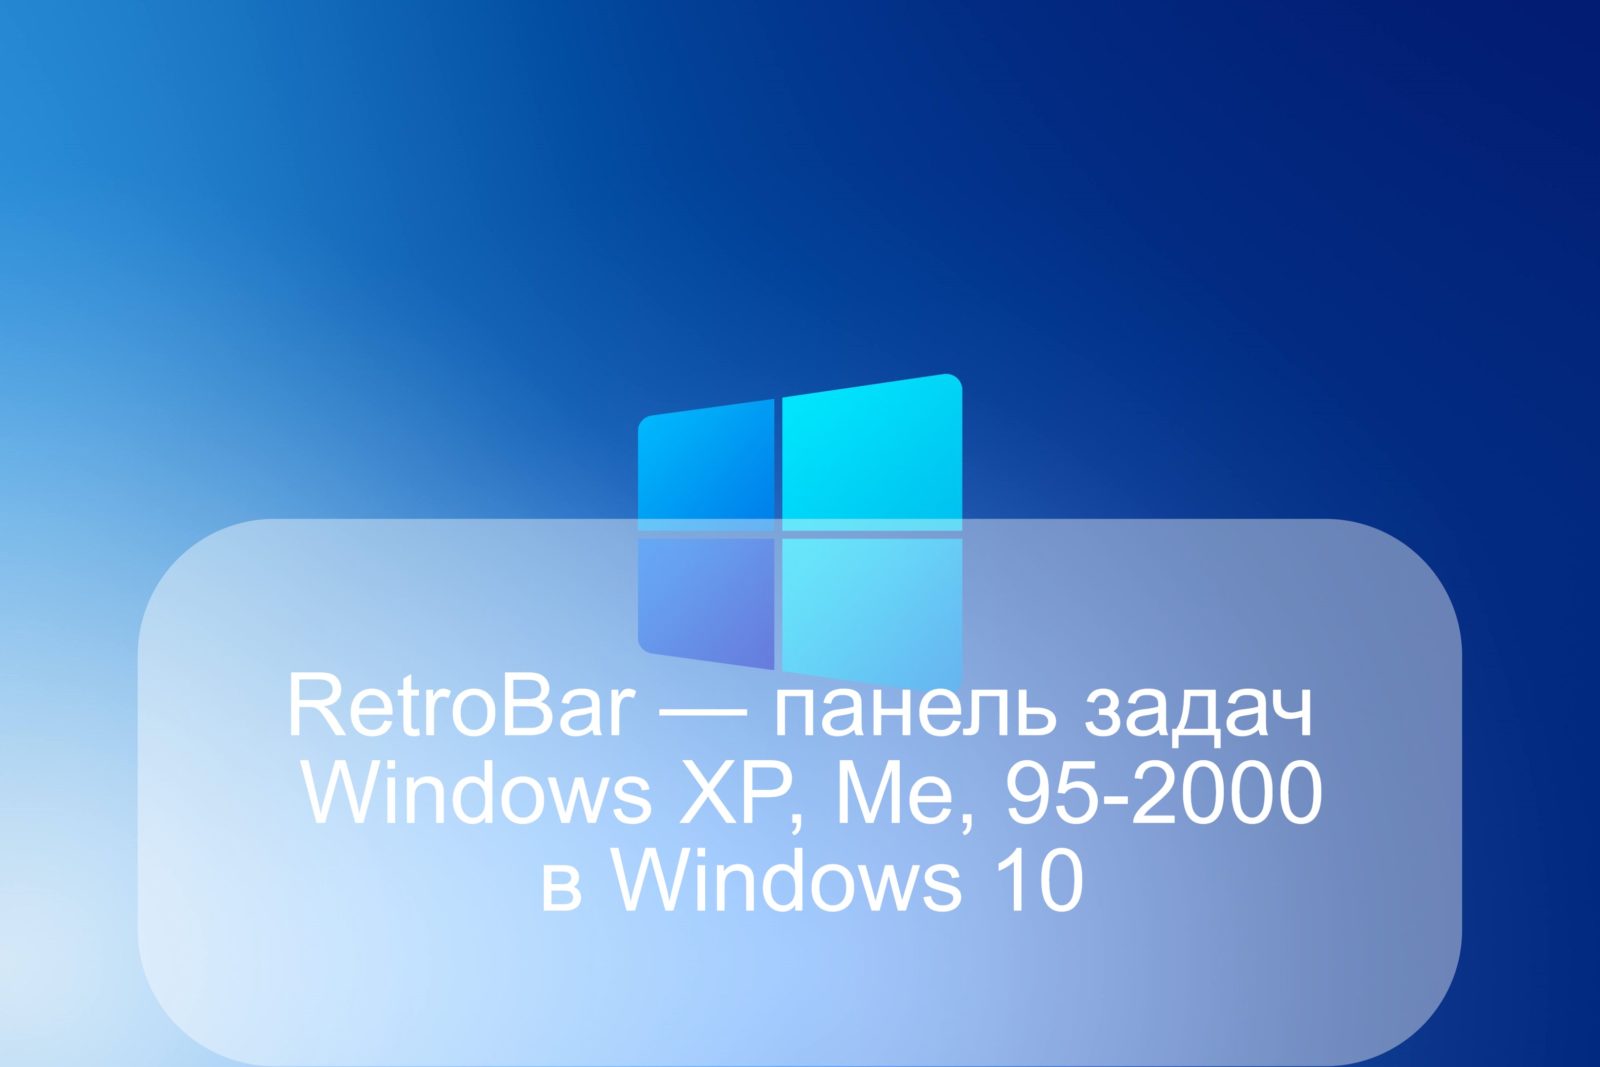 RetroBar — панель задач Windows XP, Me, 95-2000 в Windows 10